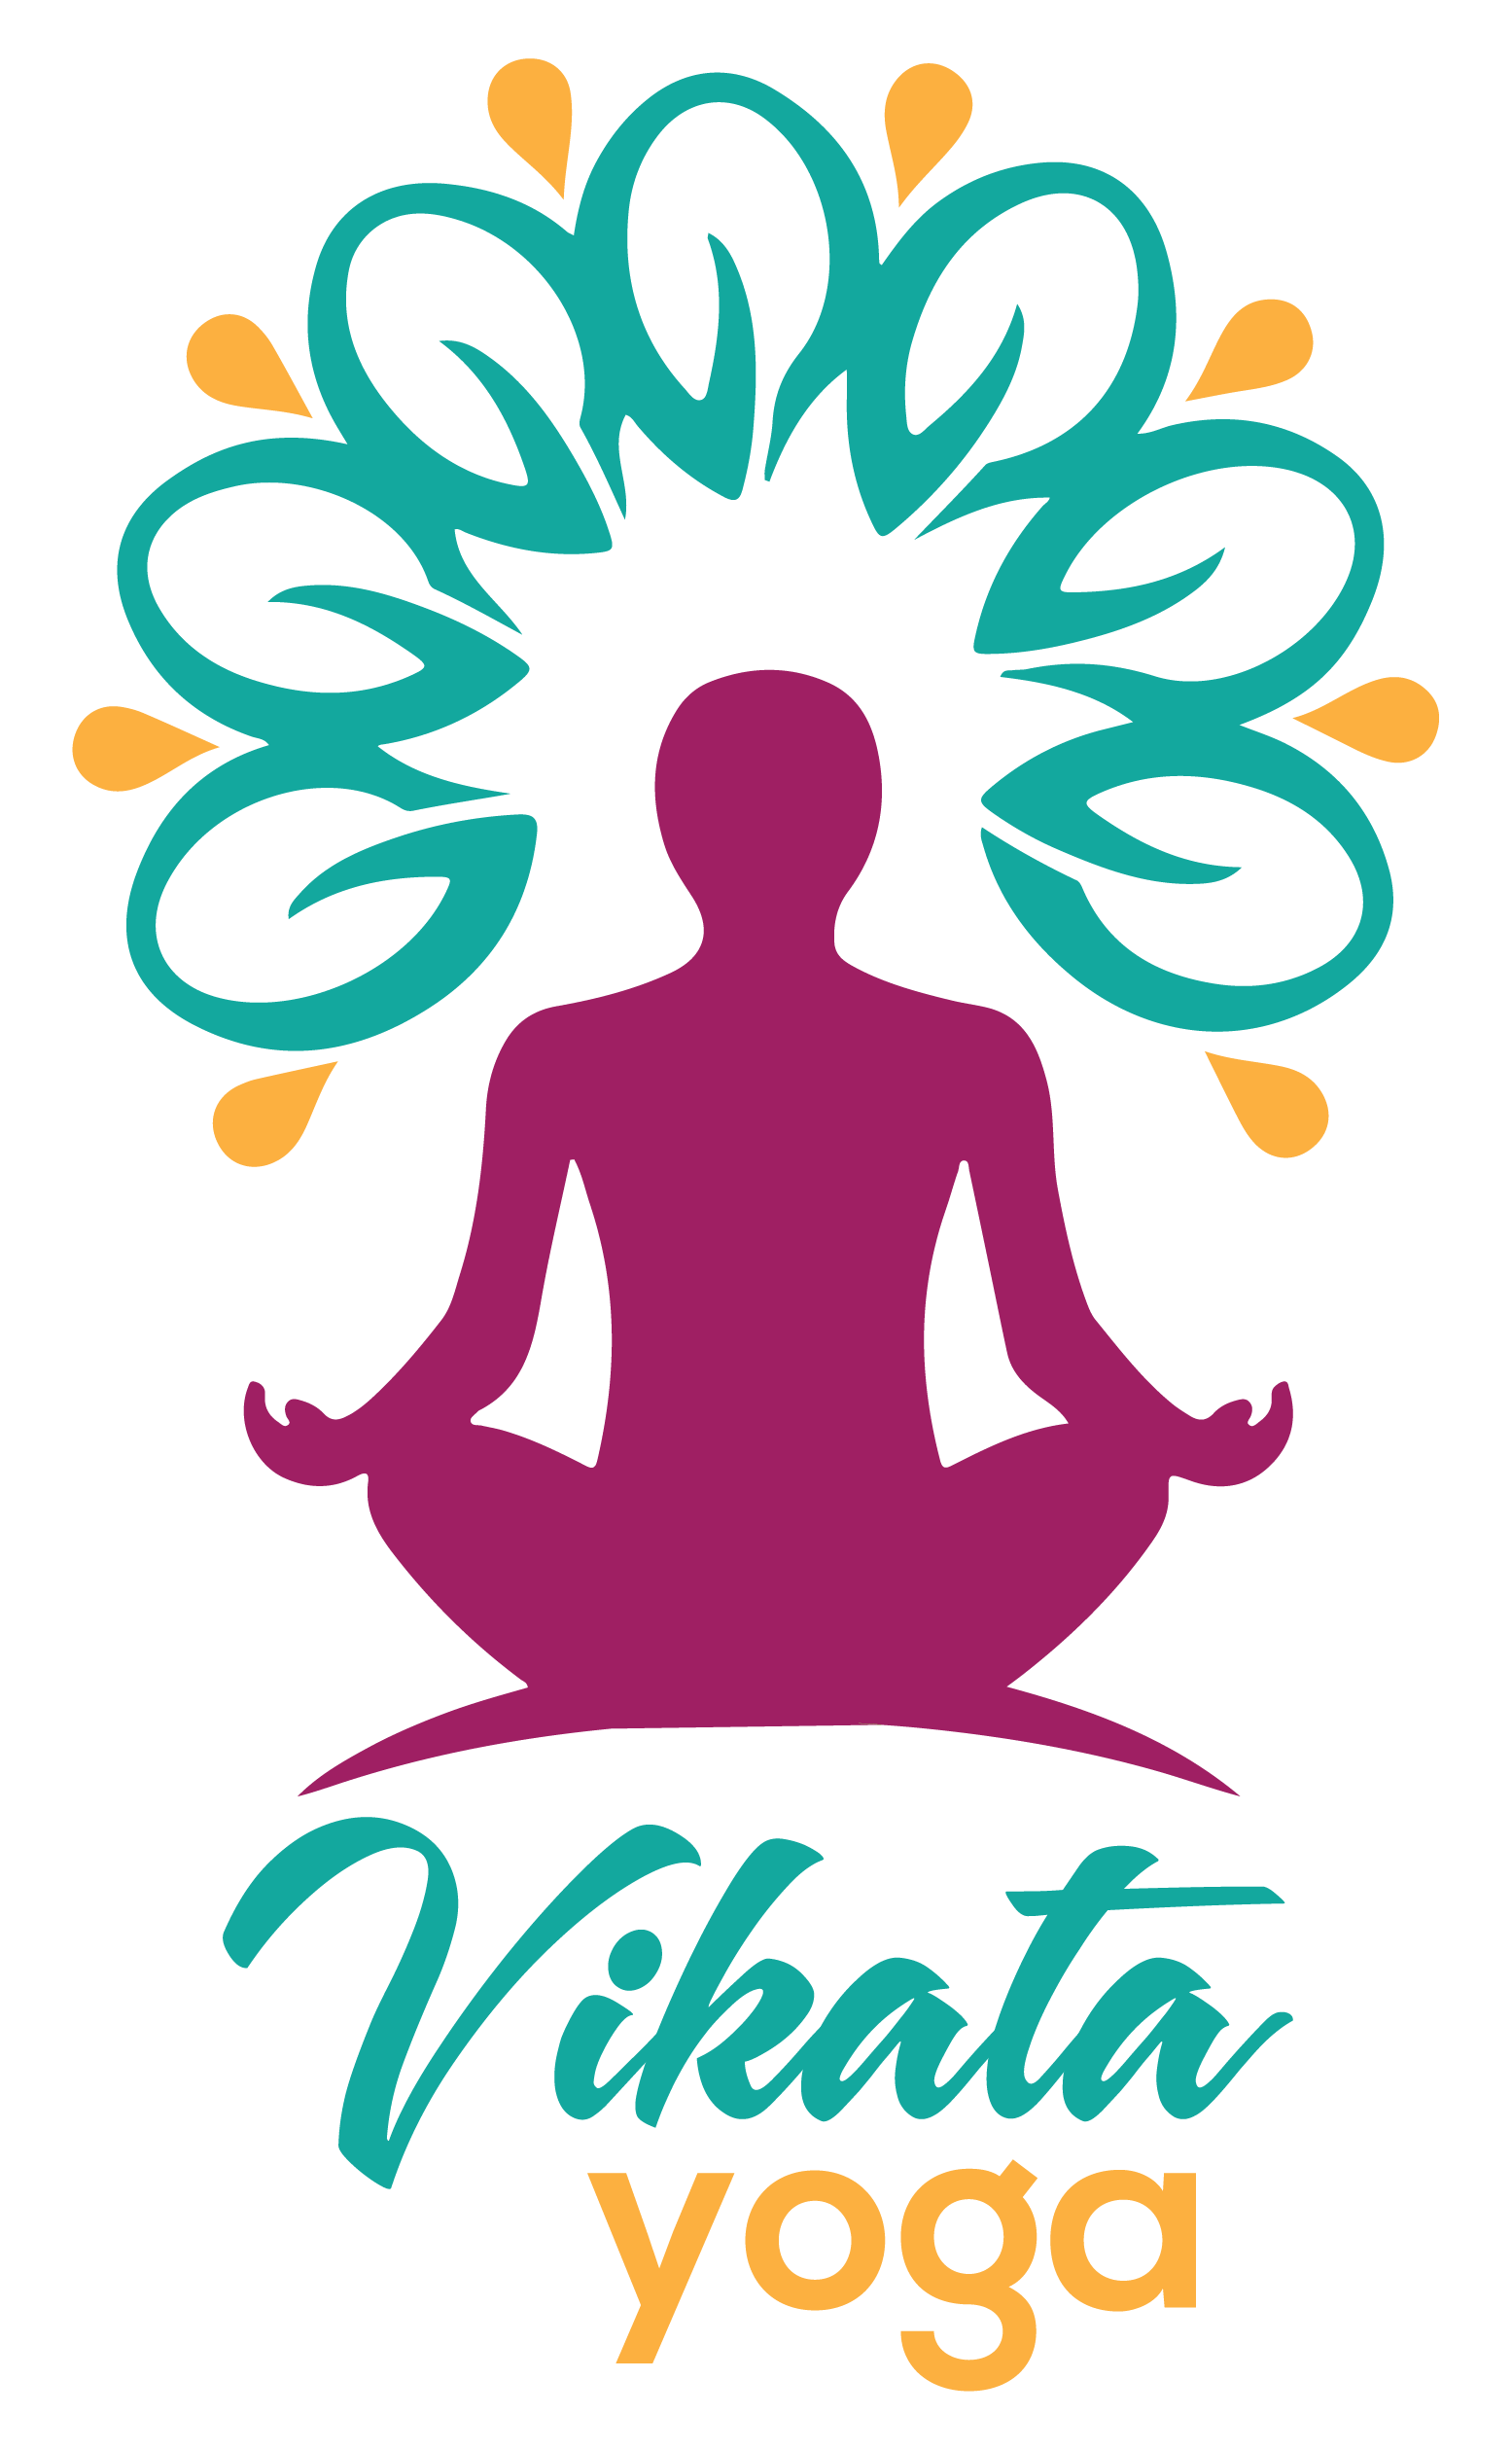 Vikata Yoga